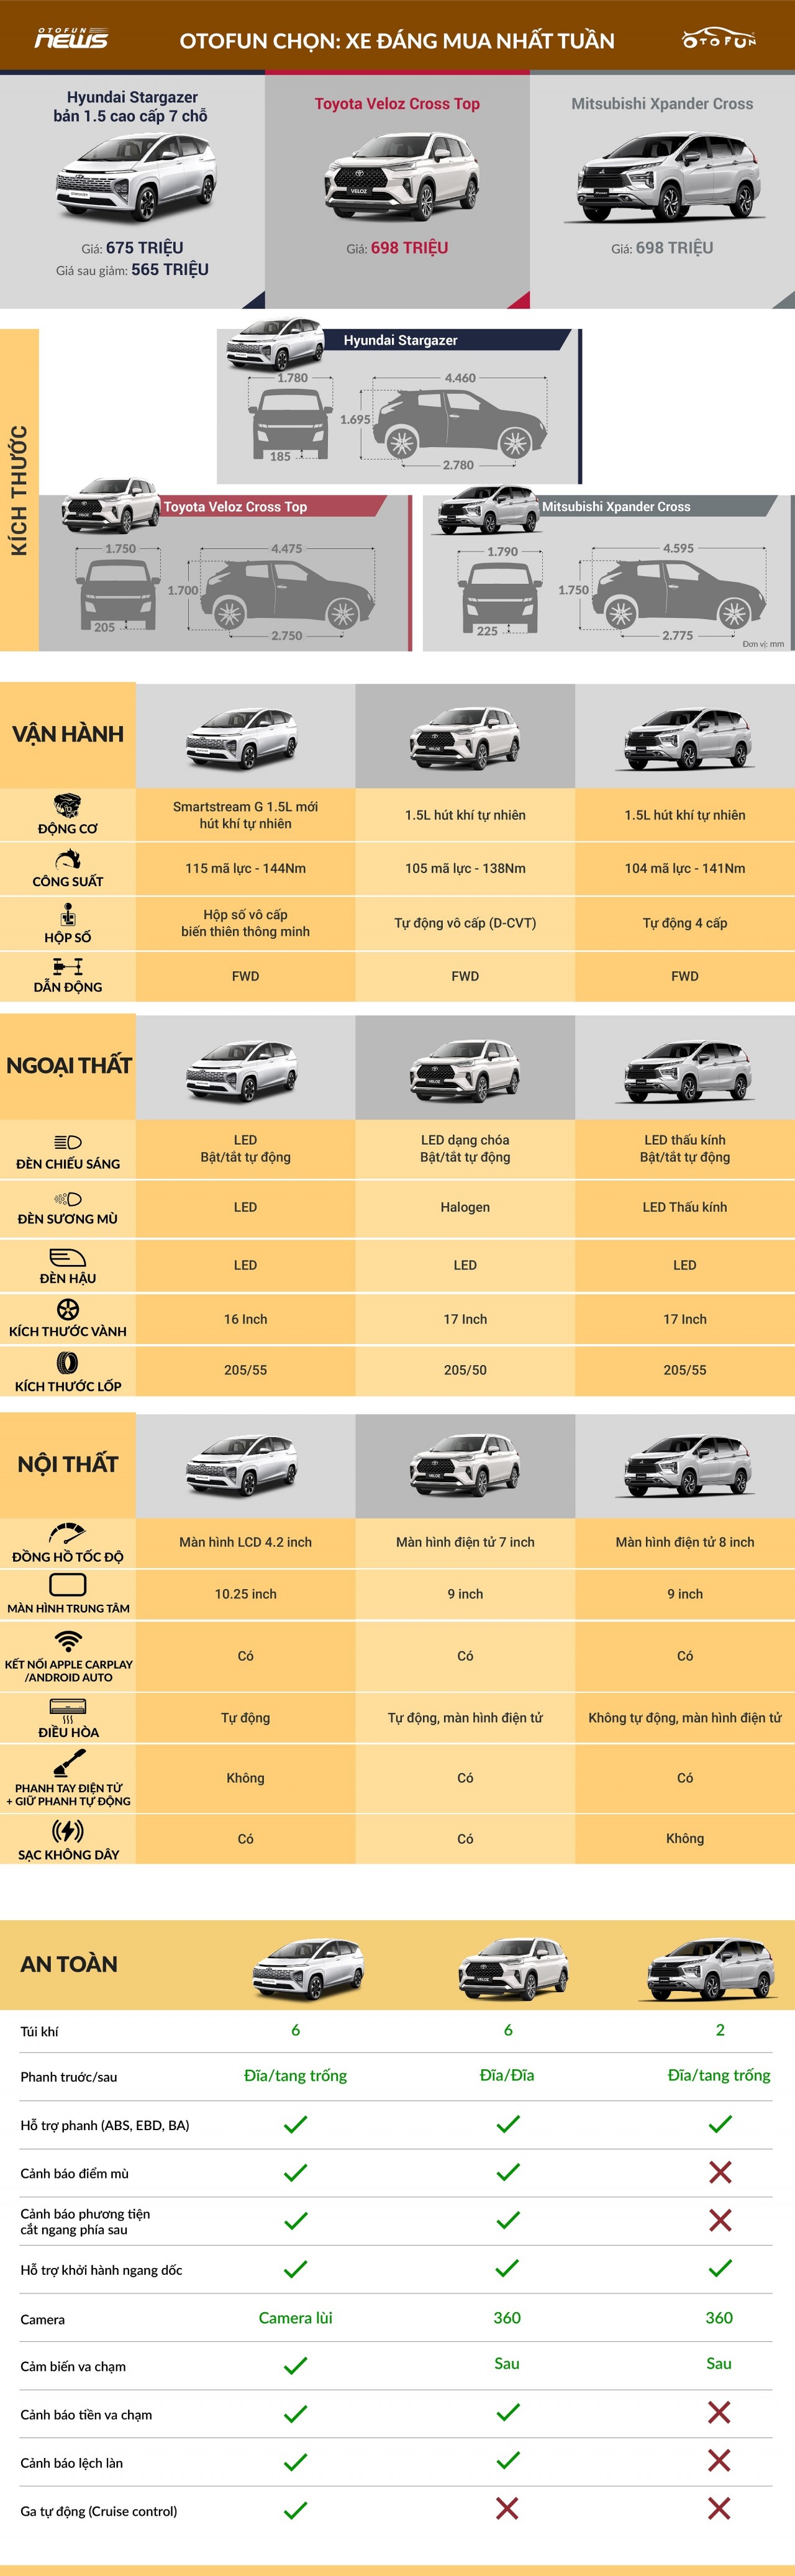 Otofun chọn: Hyundai Stargazer - Xe đáng mua nhất tuần